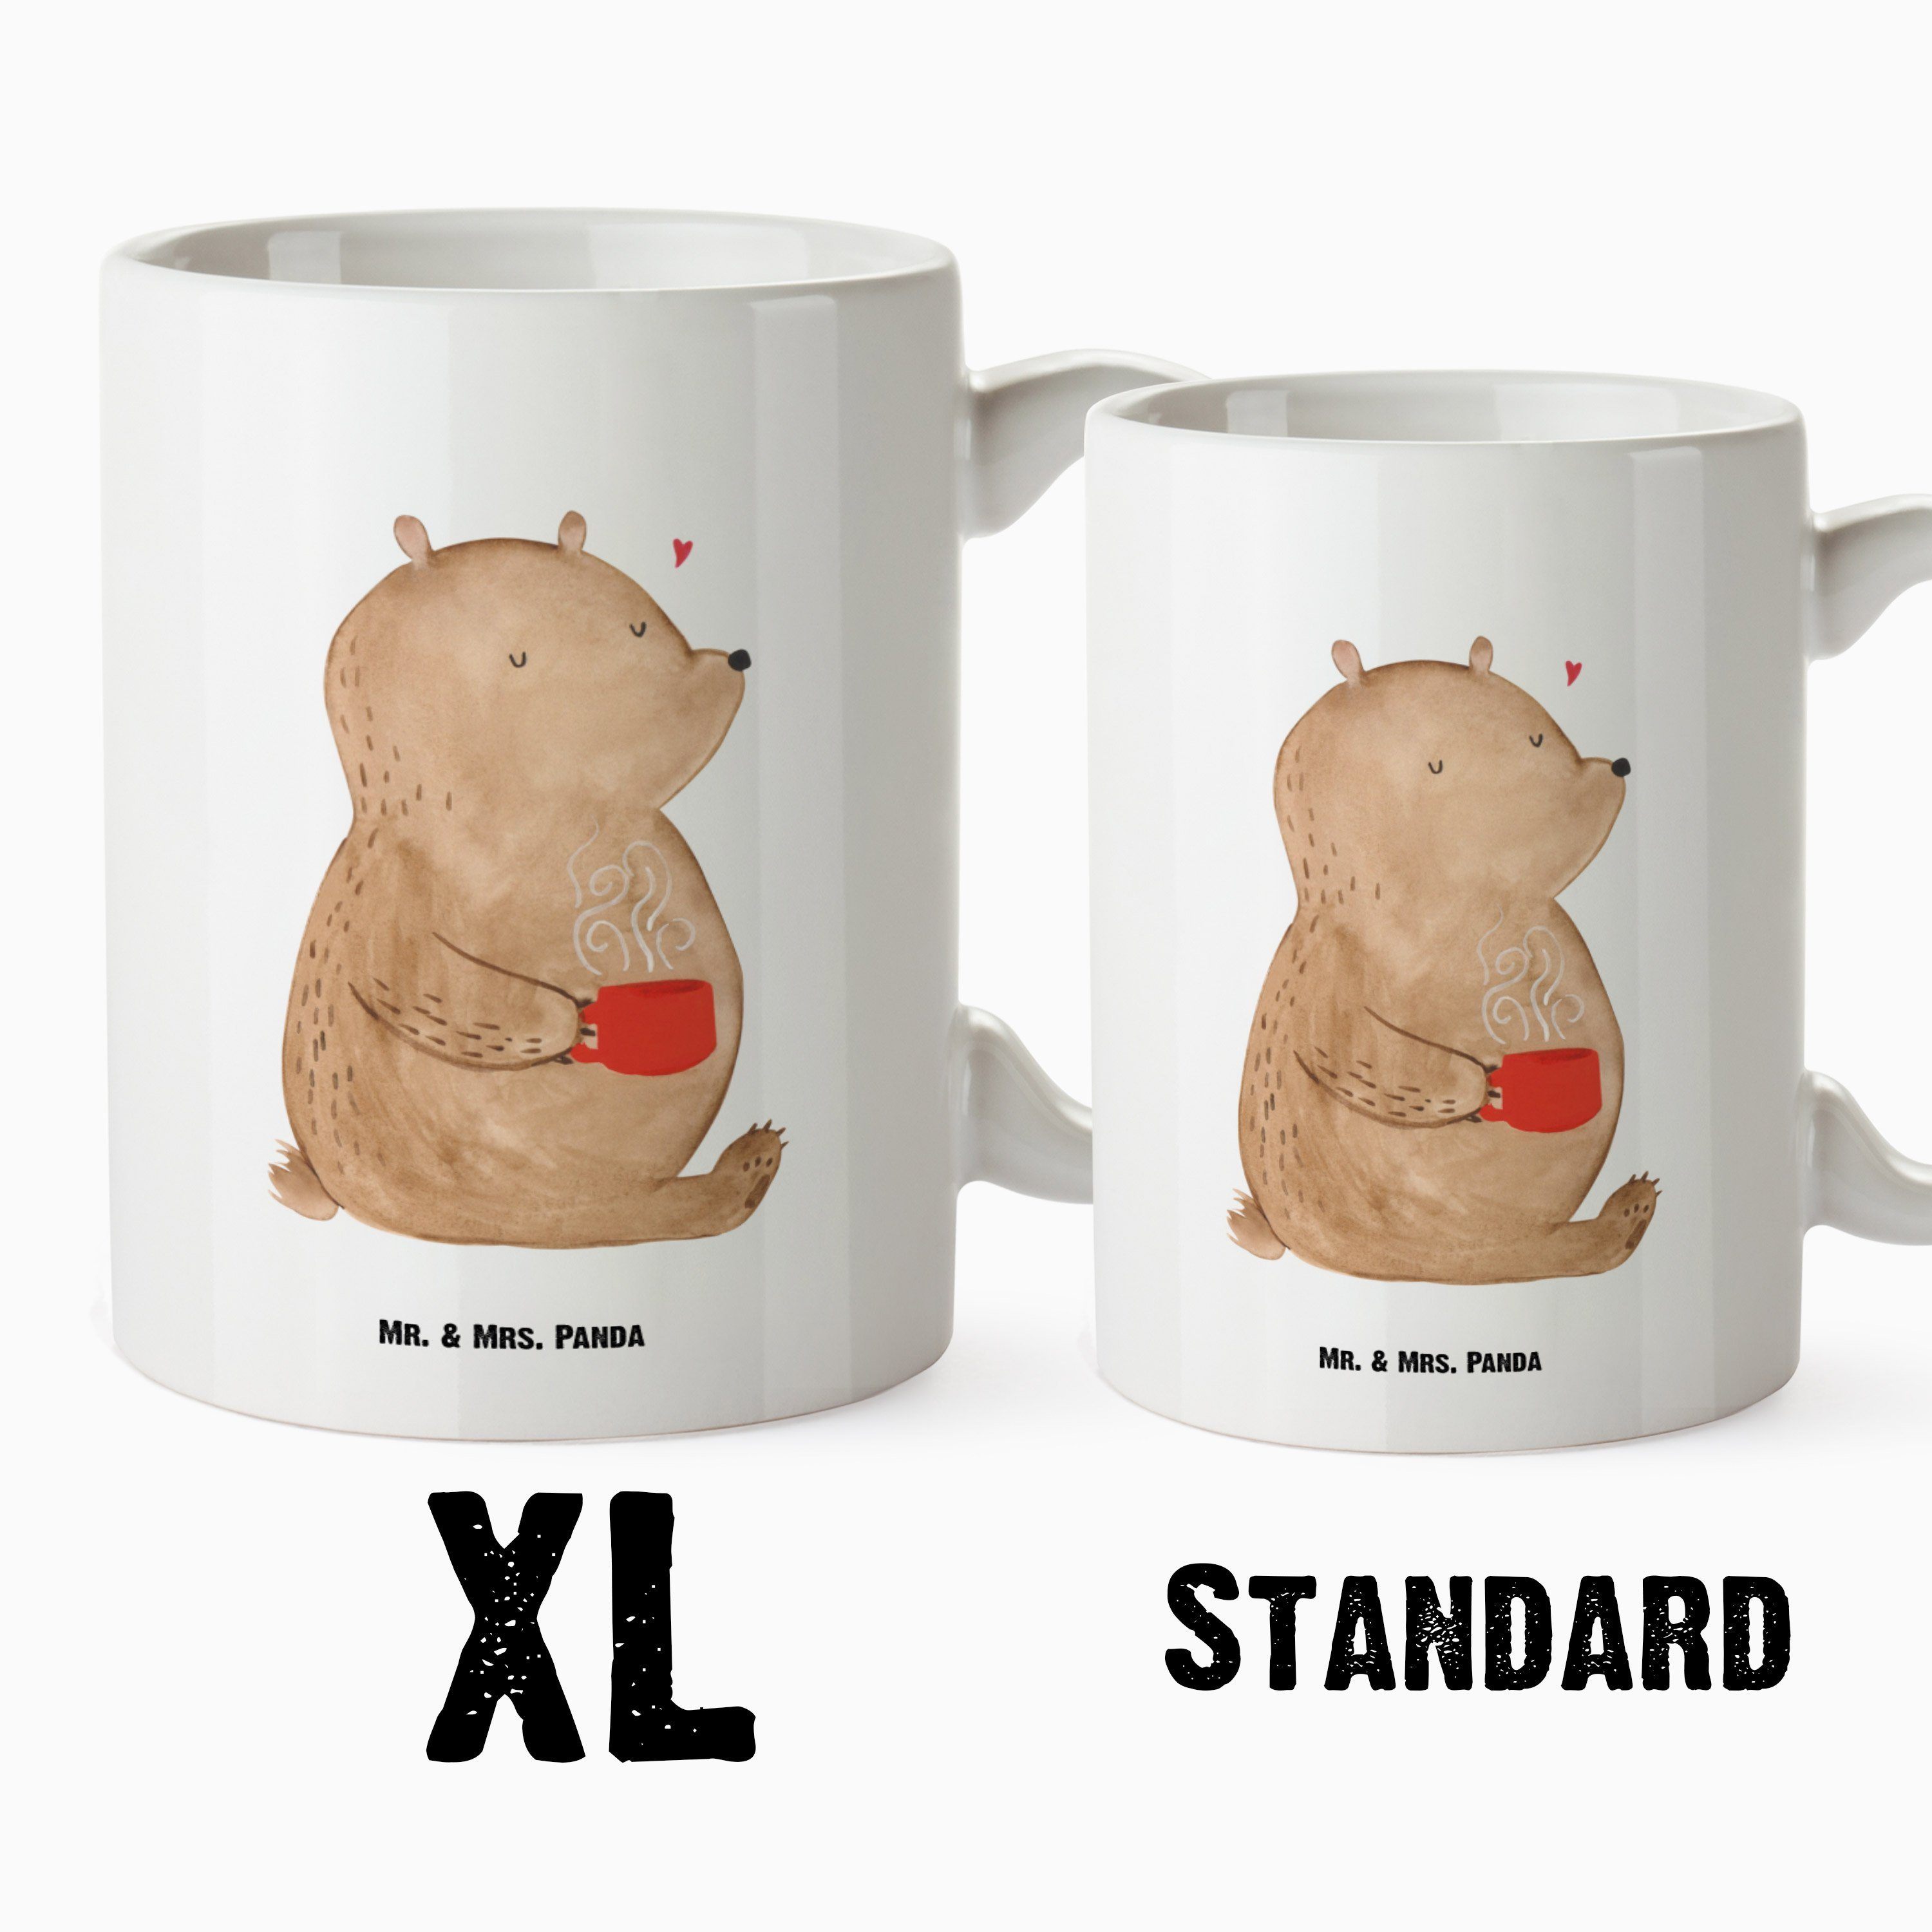 Mr. & Mrs. Panda Tasse Weiß Bär - - Tasse Kaffeetasse, Grosse Geschenk, Keramik Kaffee Groß, Jumbo, Bären, XL